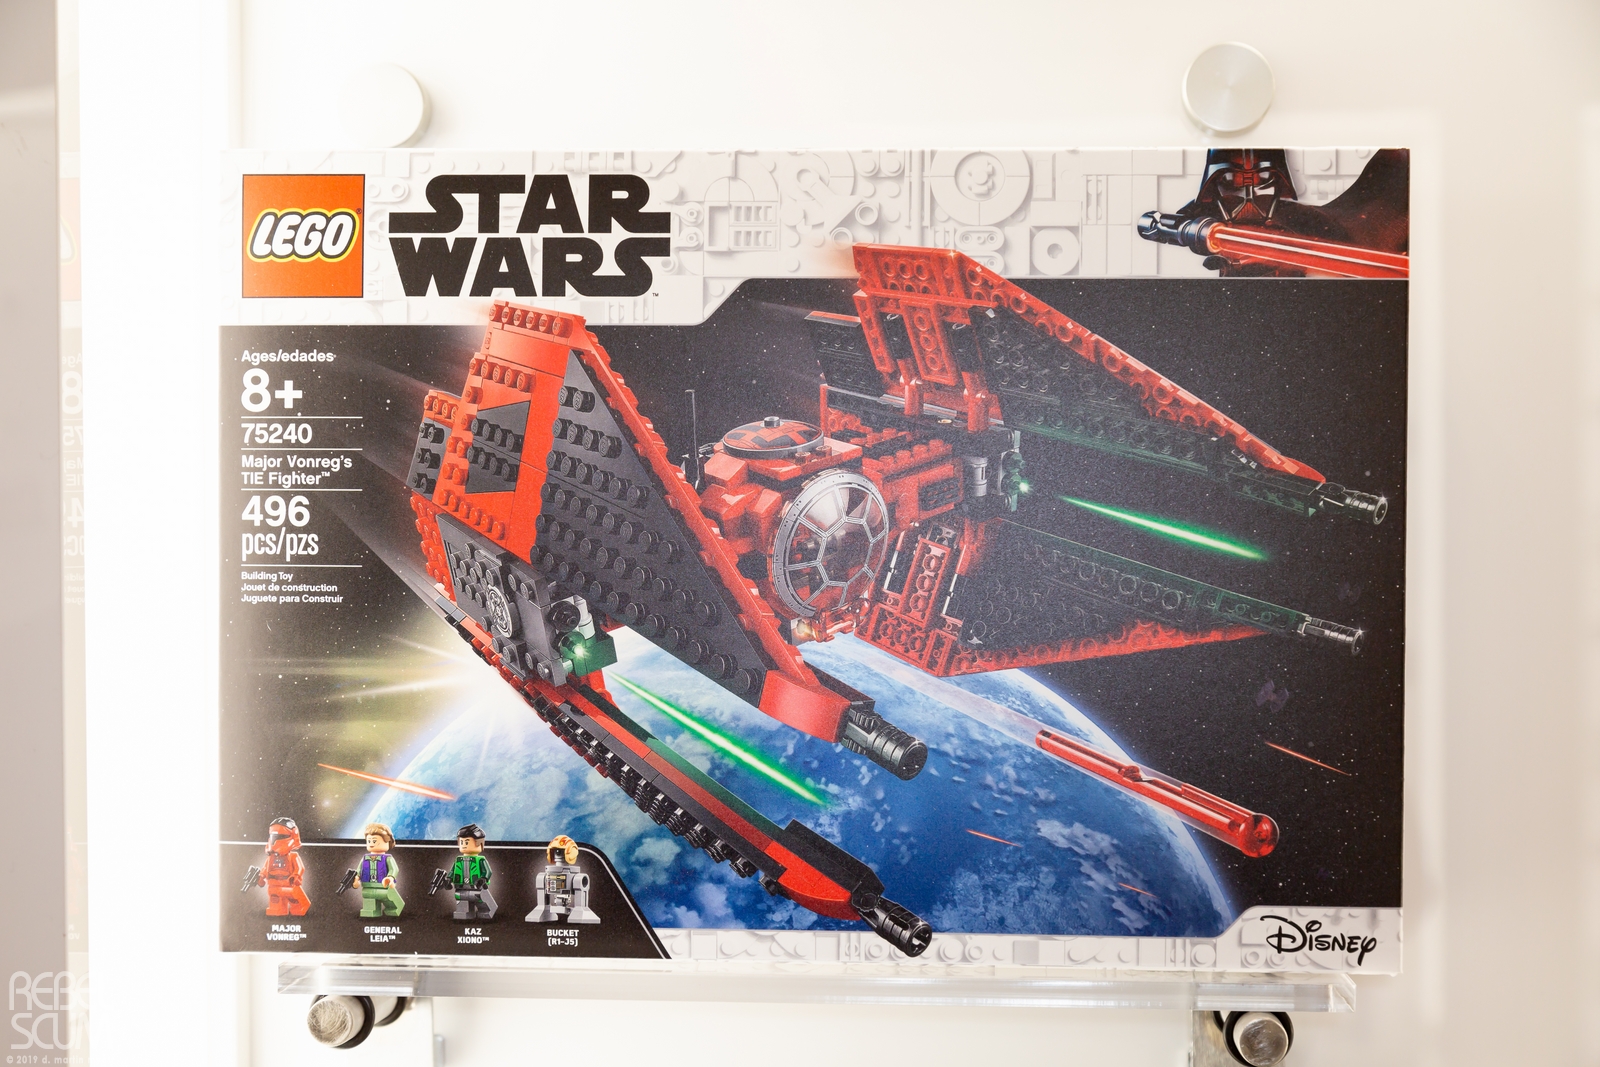 Toy-Fair-New-York-2019-Star-Wars-LEGO-003.jpg